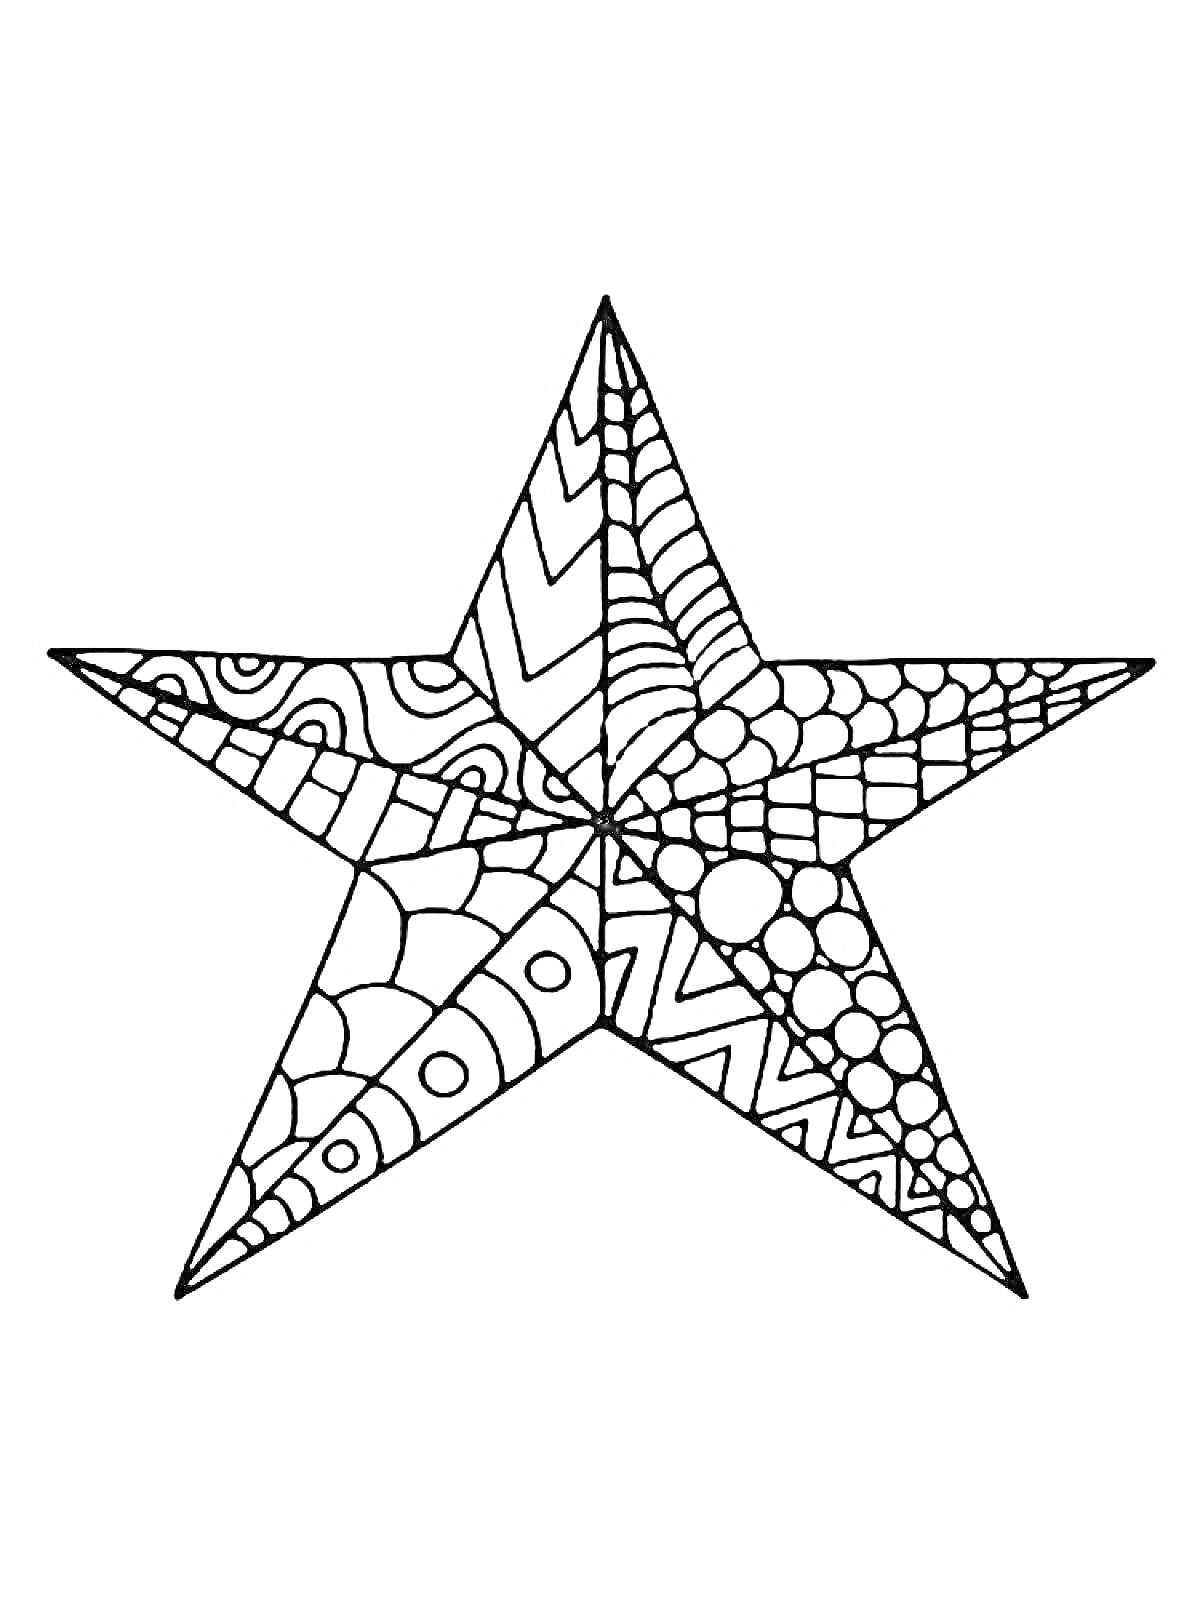 Раскраска звезда с узорами и абстрактными элементами: линии, круги, зигзаги